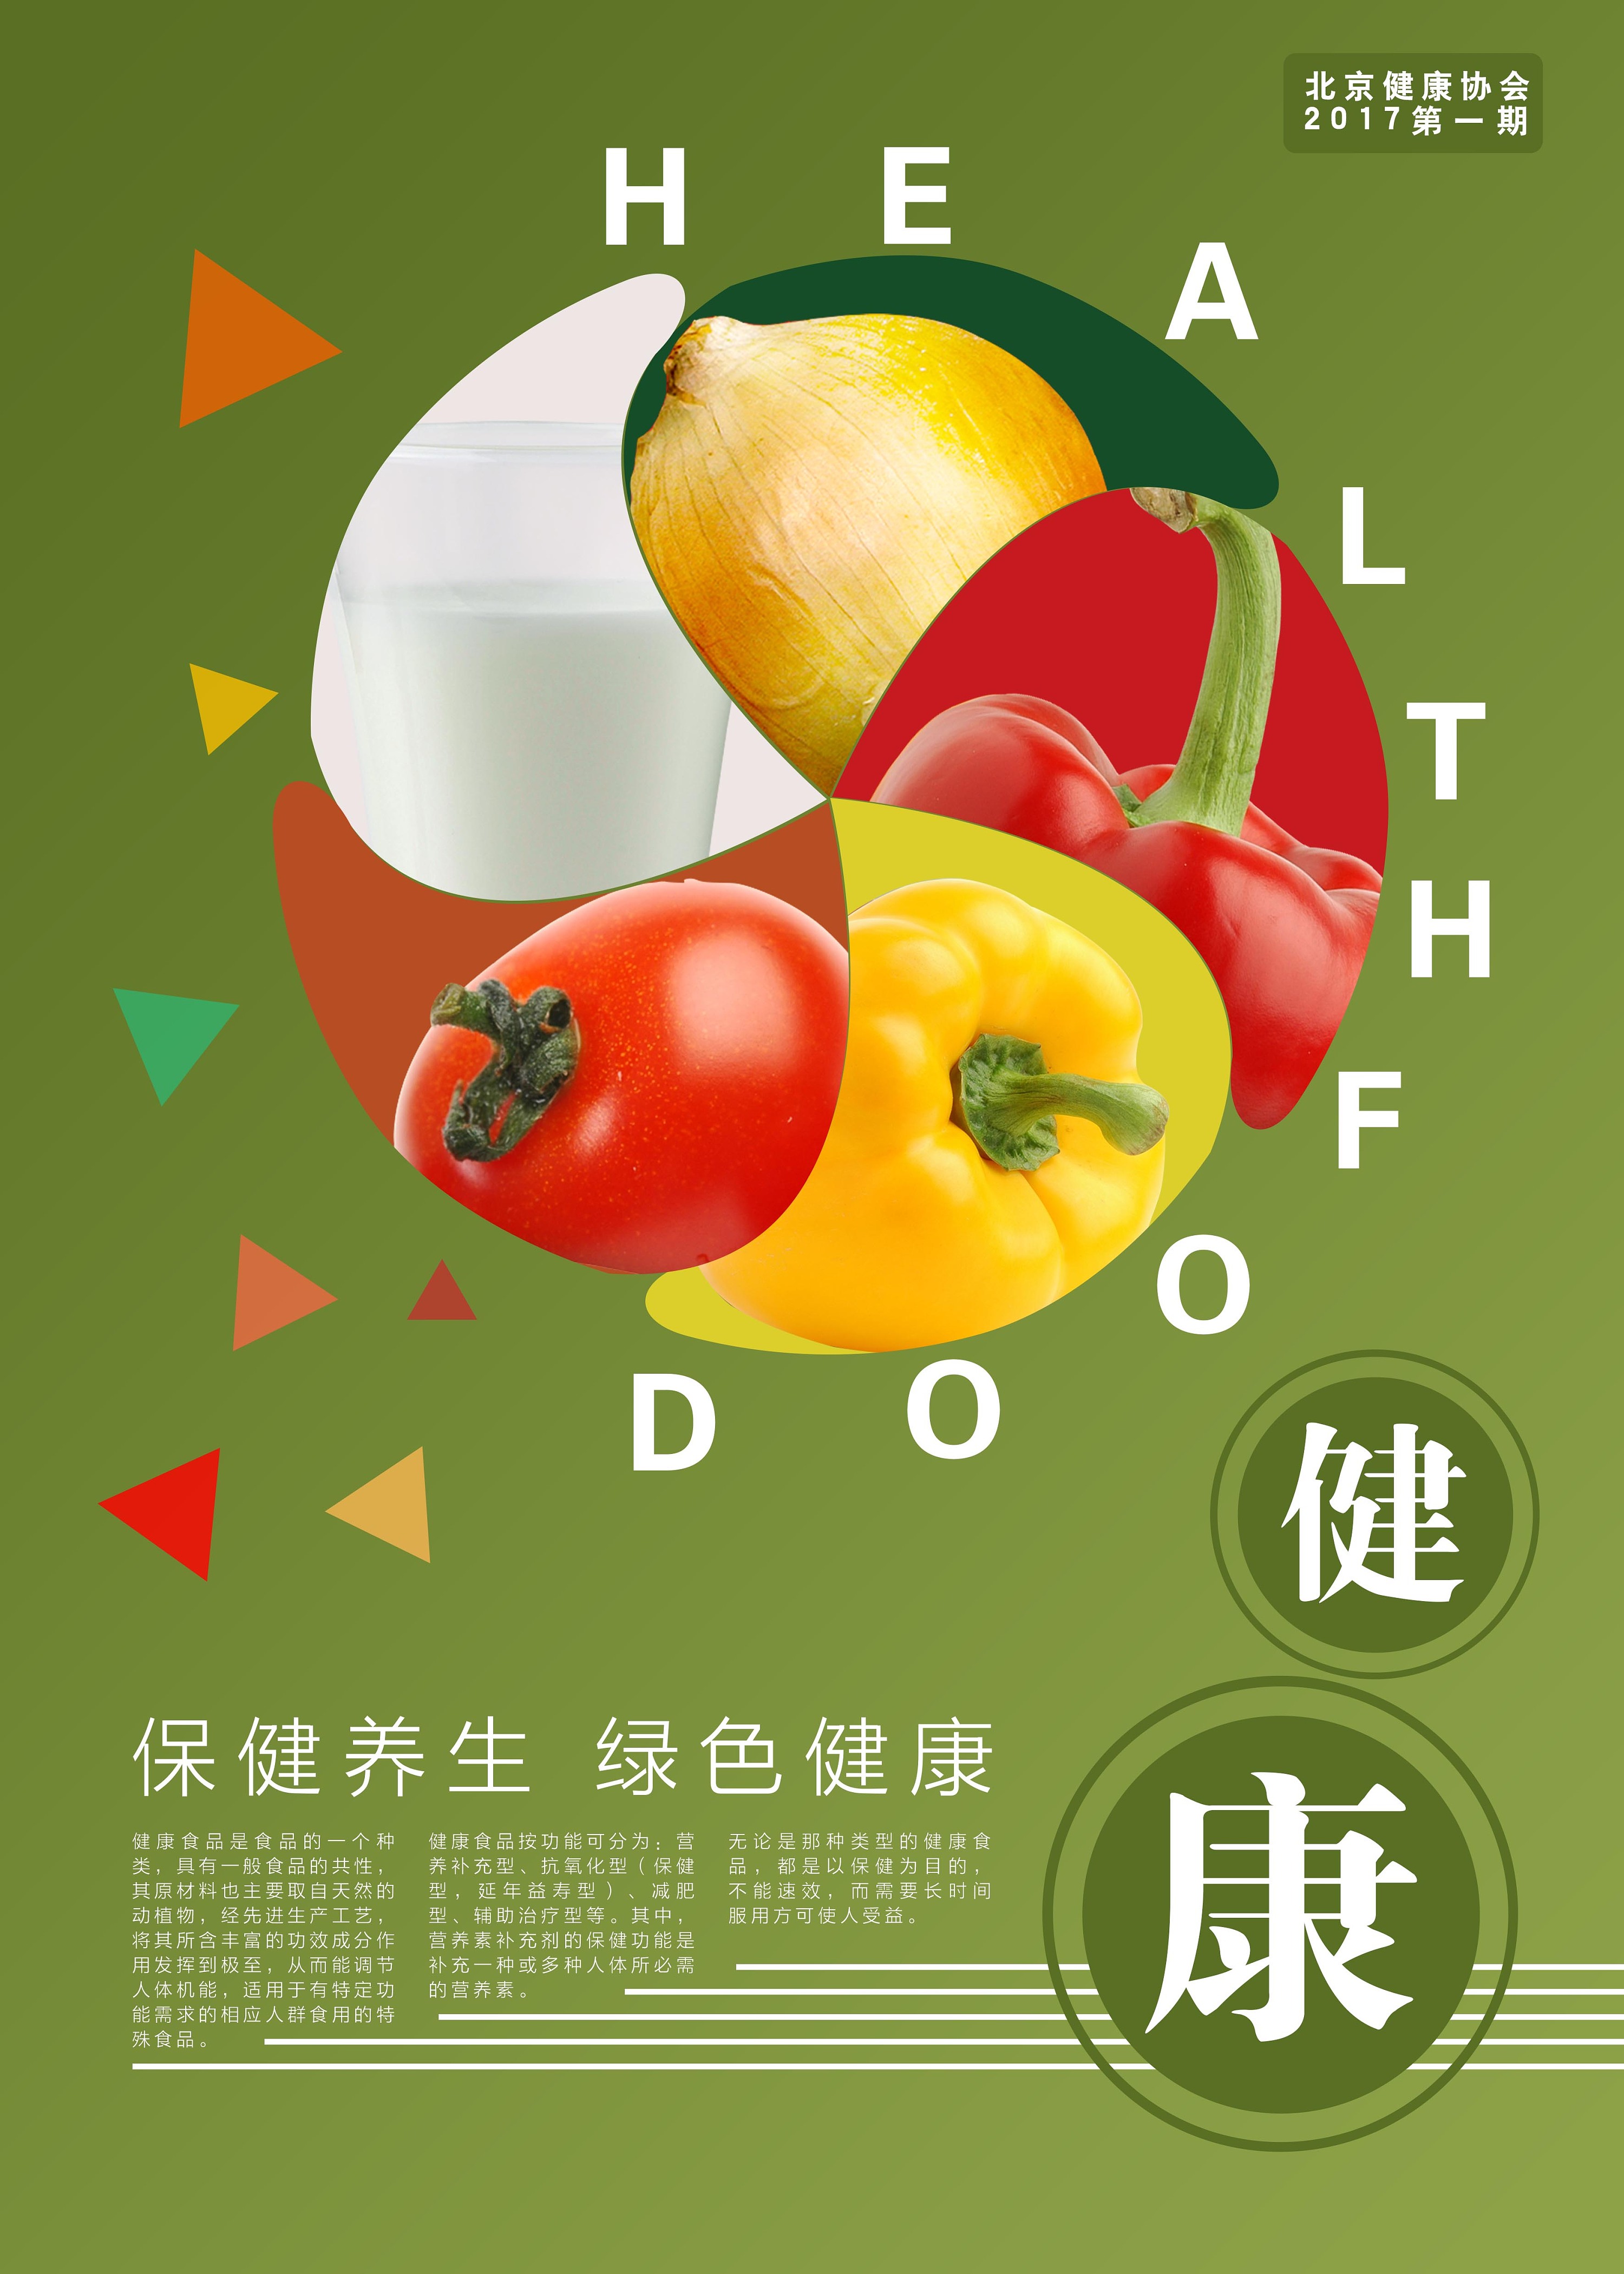 健康进万家科普宣传栏2020年11月 -湖北省卫生健康委员会